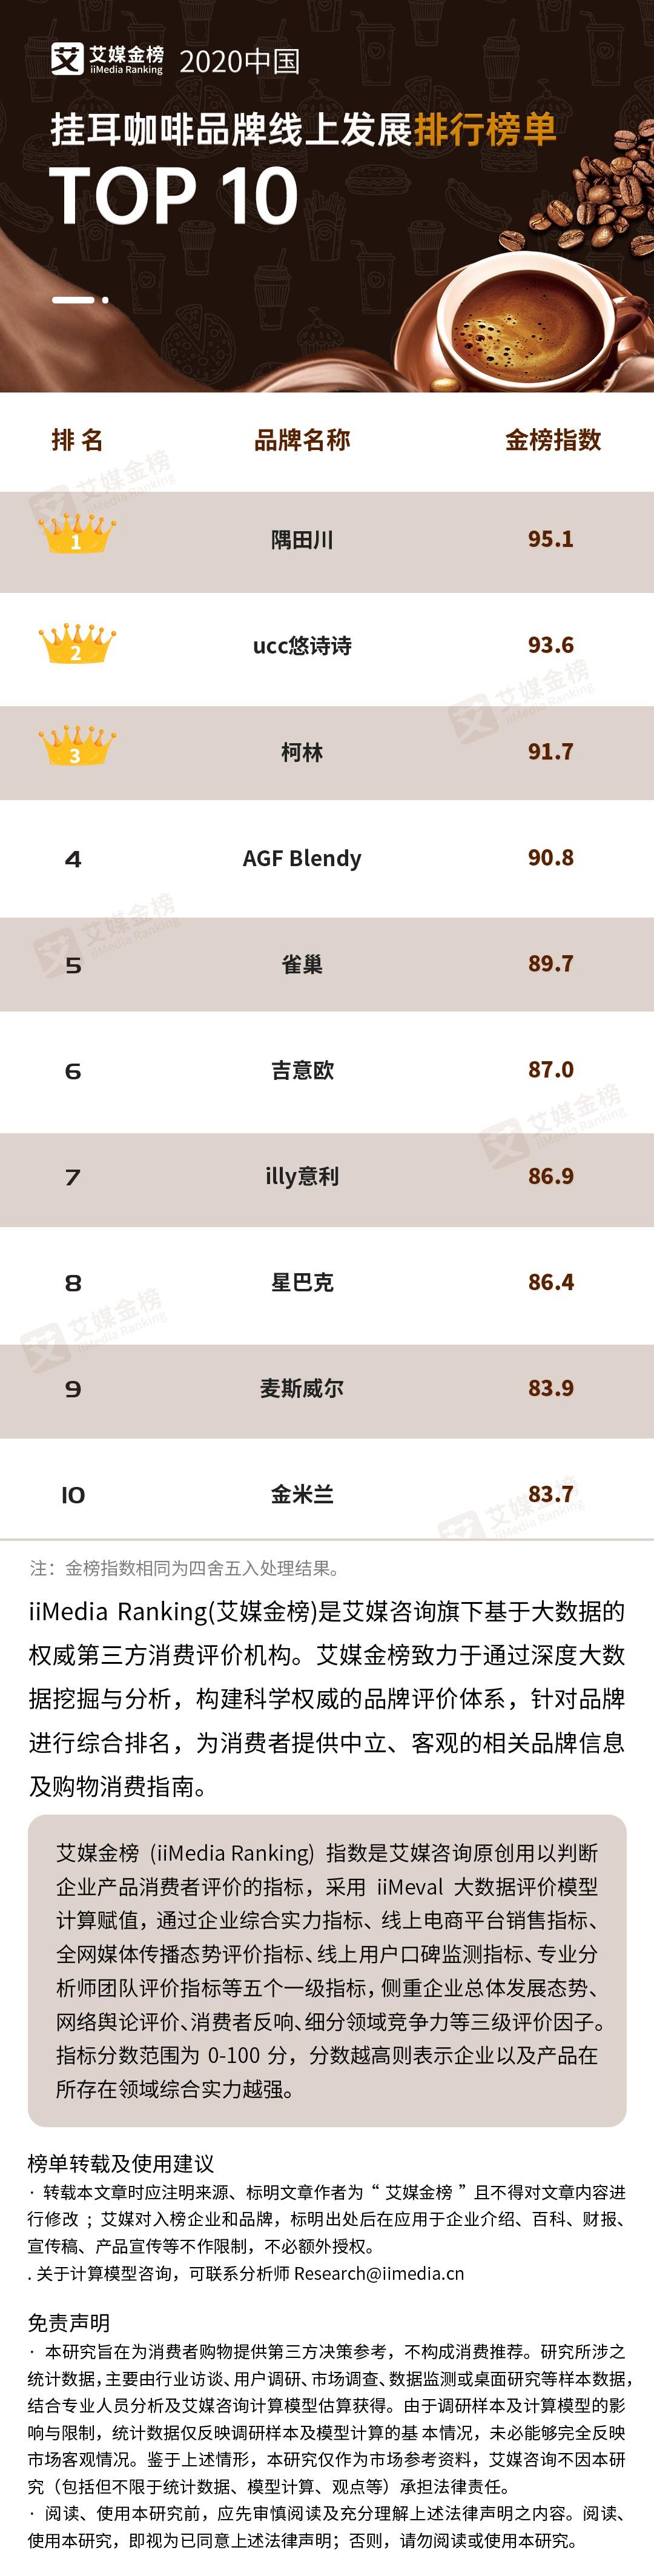 2020年10月中国挂耳咖啡品牌线上发展排行榜单TOP10